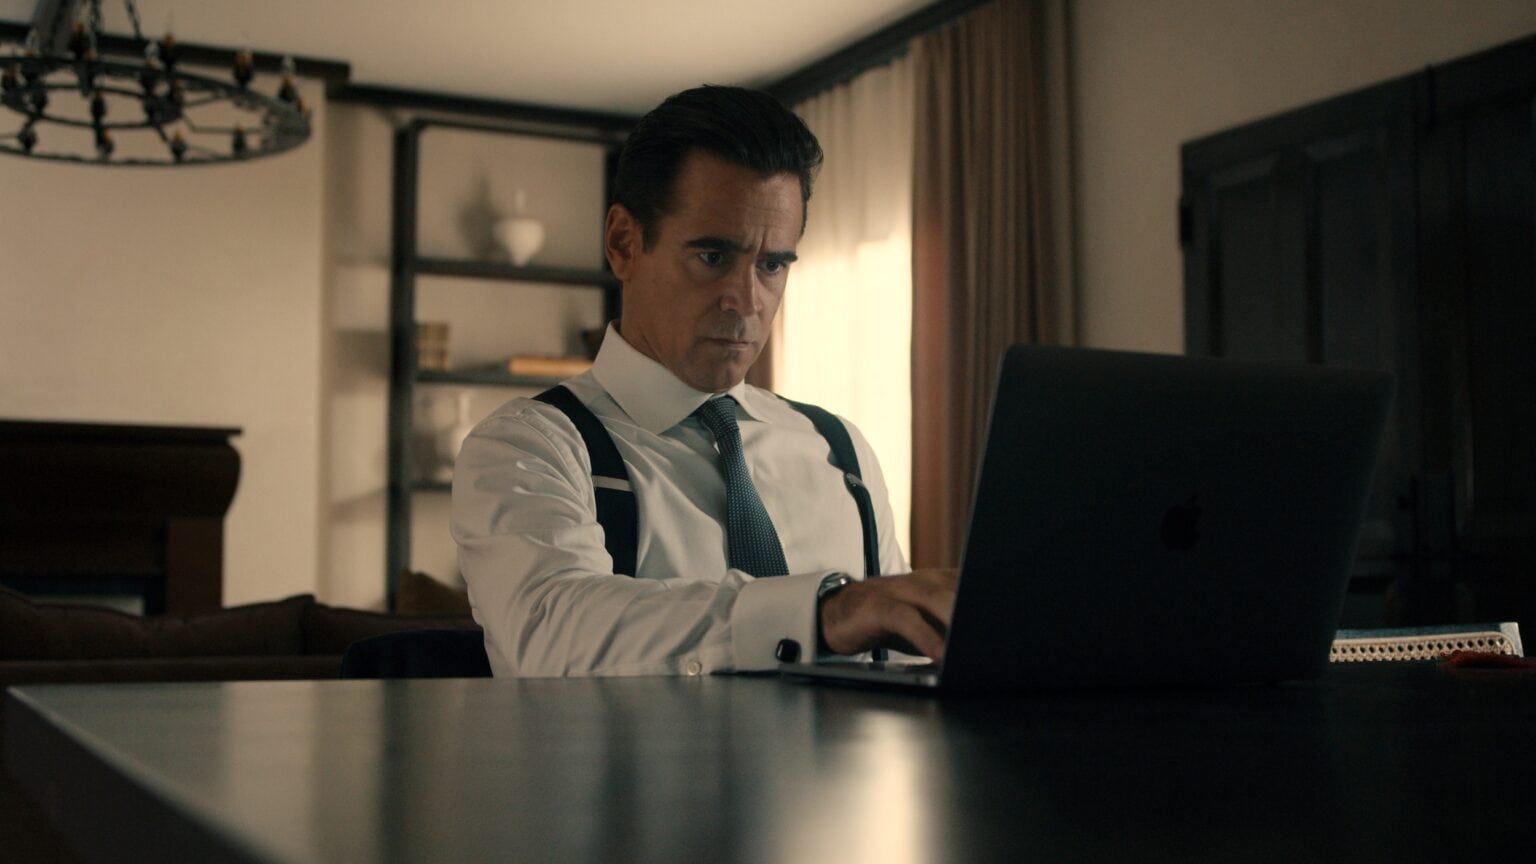 Colin Farrell stars as a private investigator in Sugar, debuting April 5 on Apple TV+.